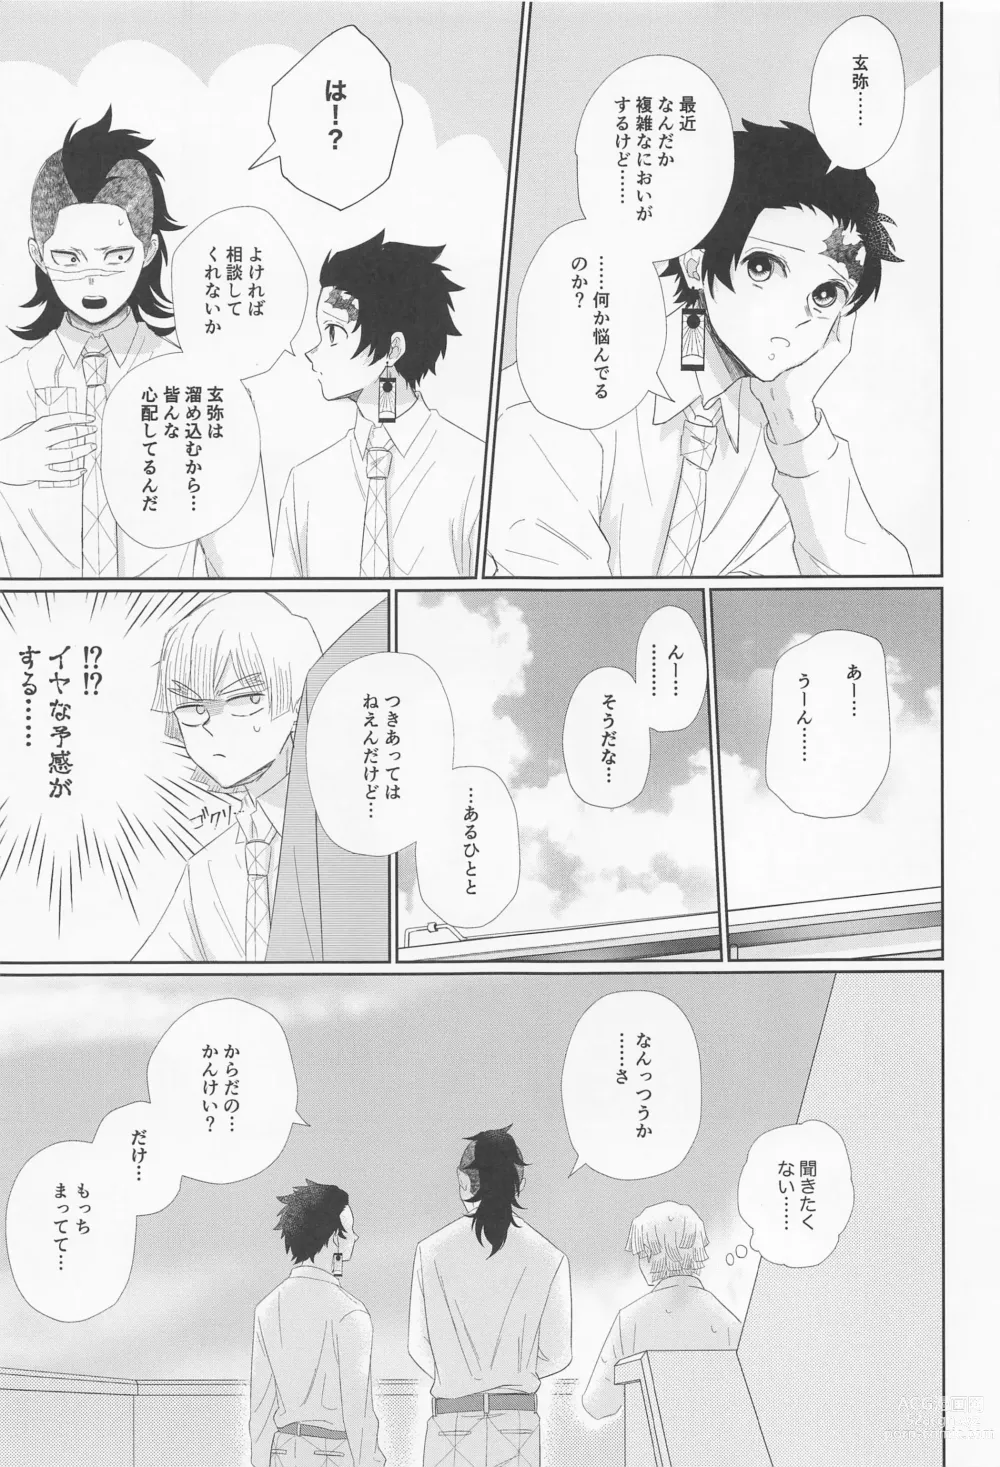 Page 13 of doujinshi Dare ni Demo Himitsu wa Aru - Everyone has secrets.